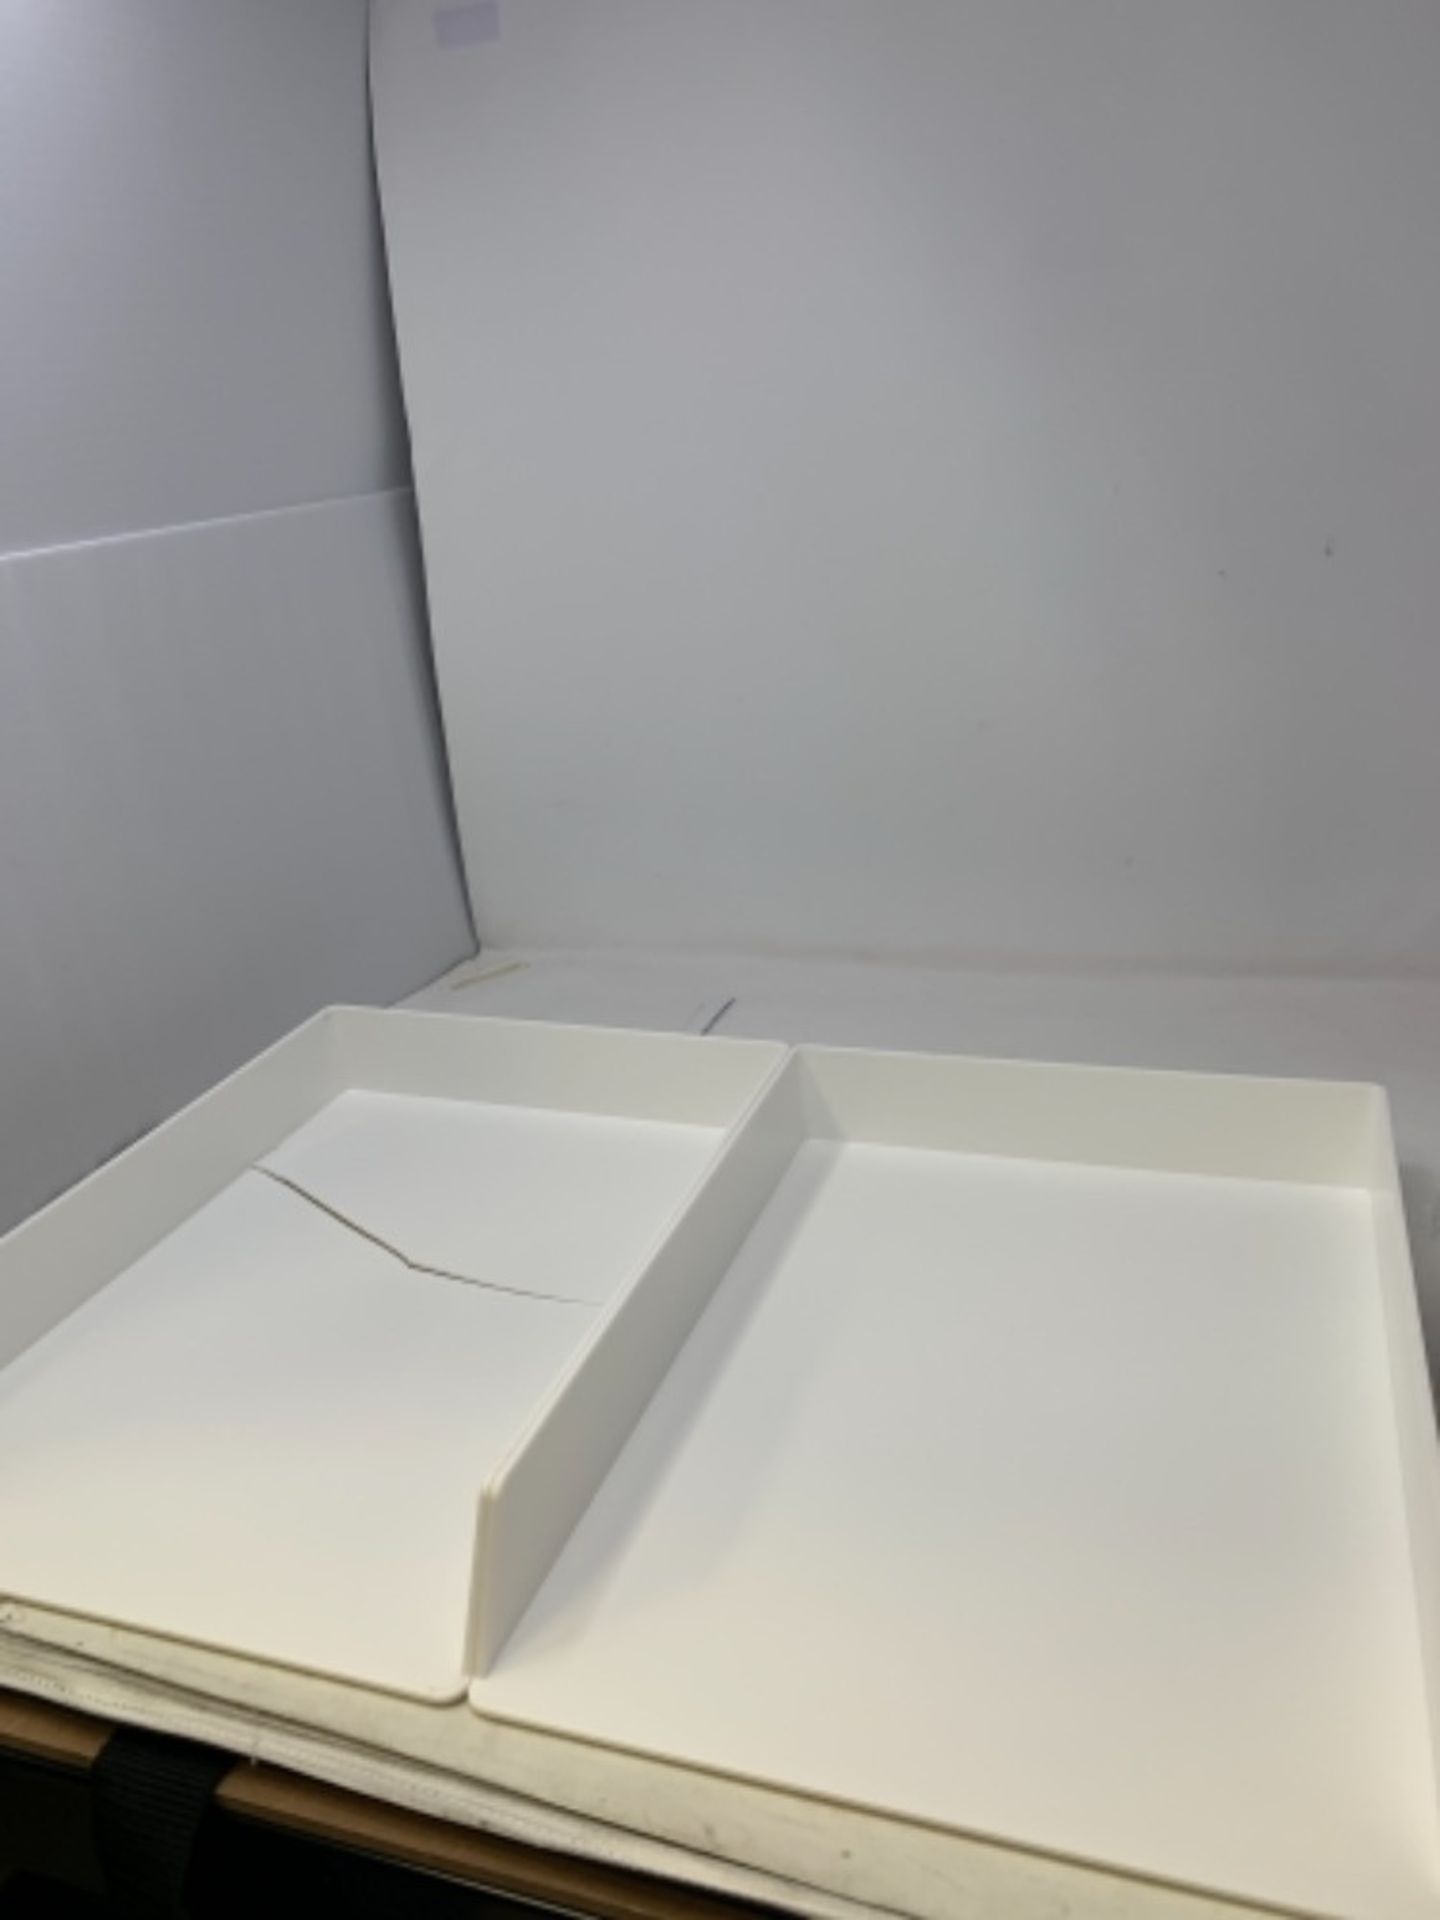 [CRACKED] Amazon Basics Plastic Organizer - Letter Tray, White, 2-Pack - Image 2 of 2